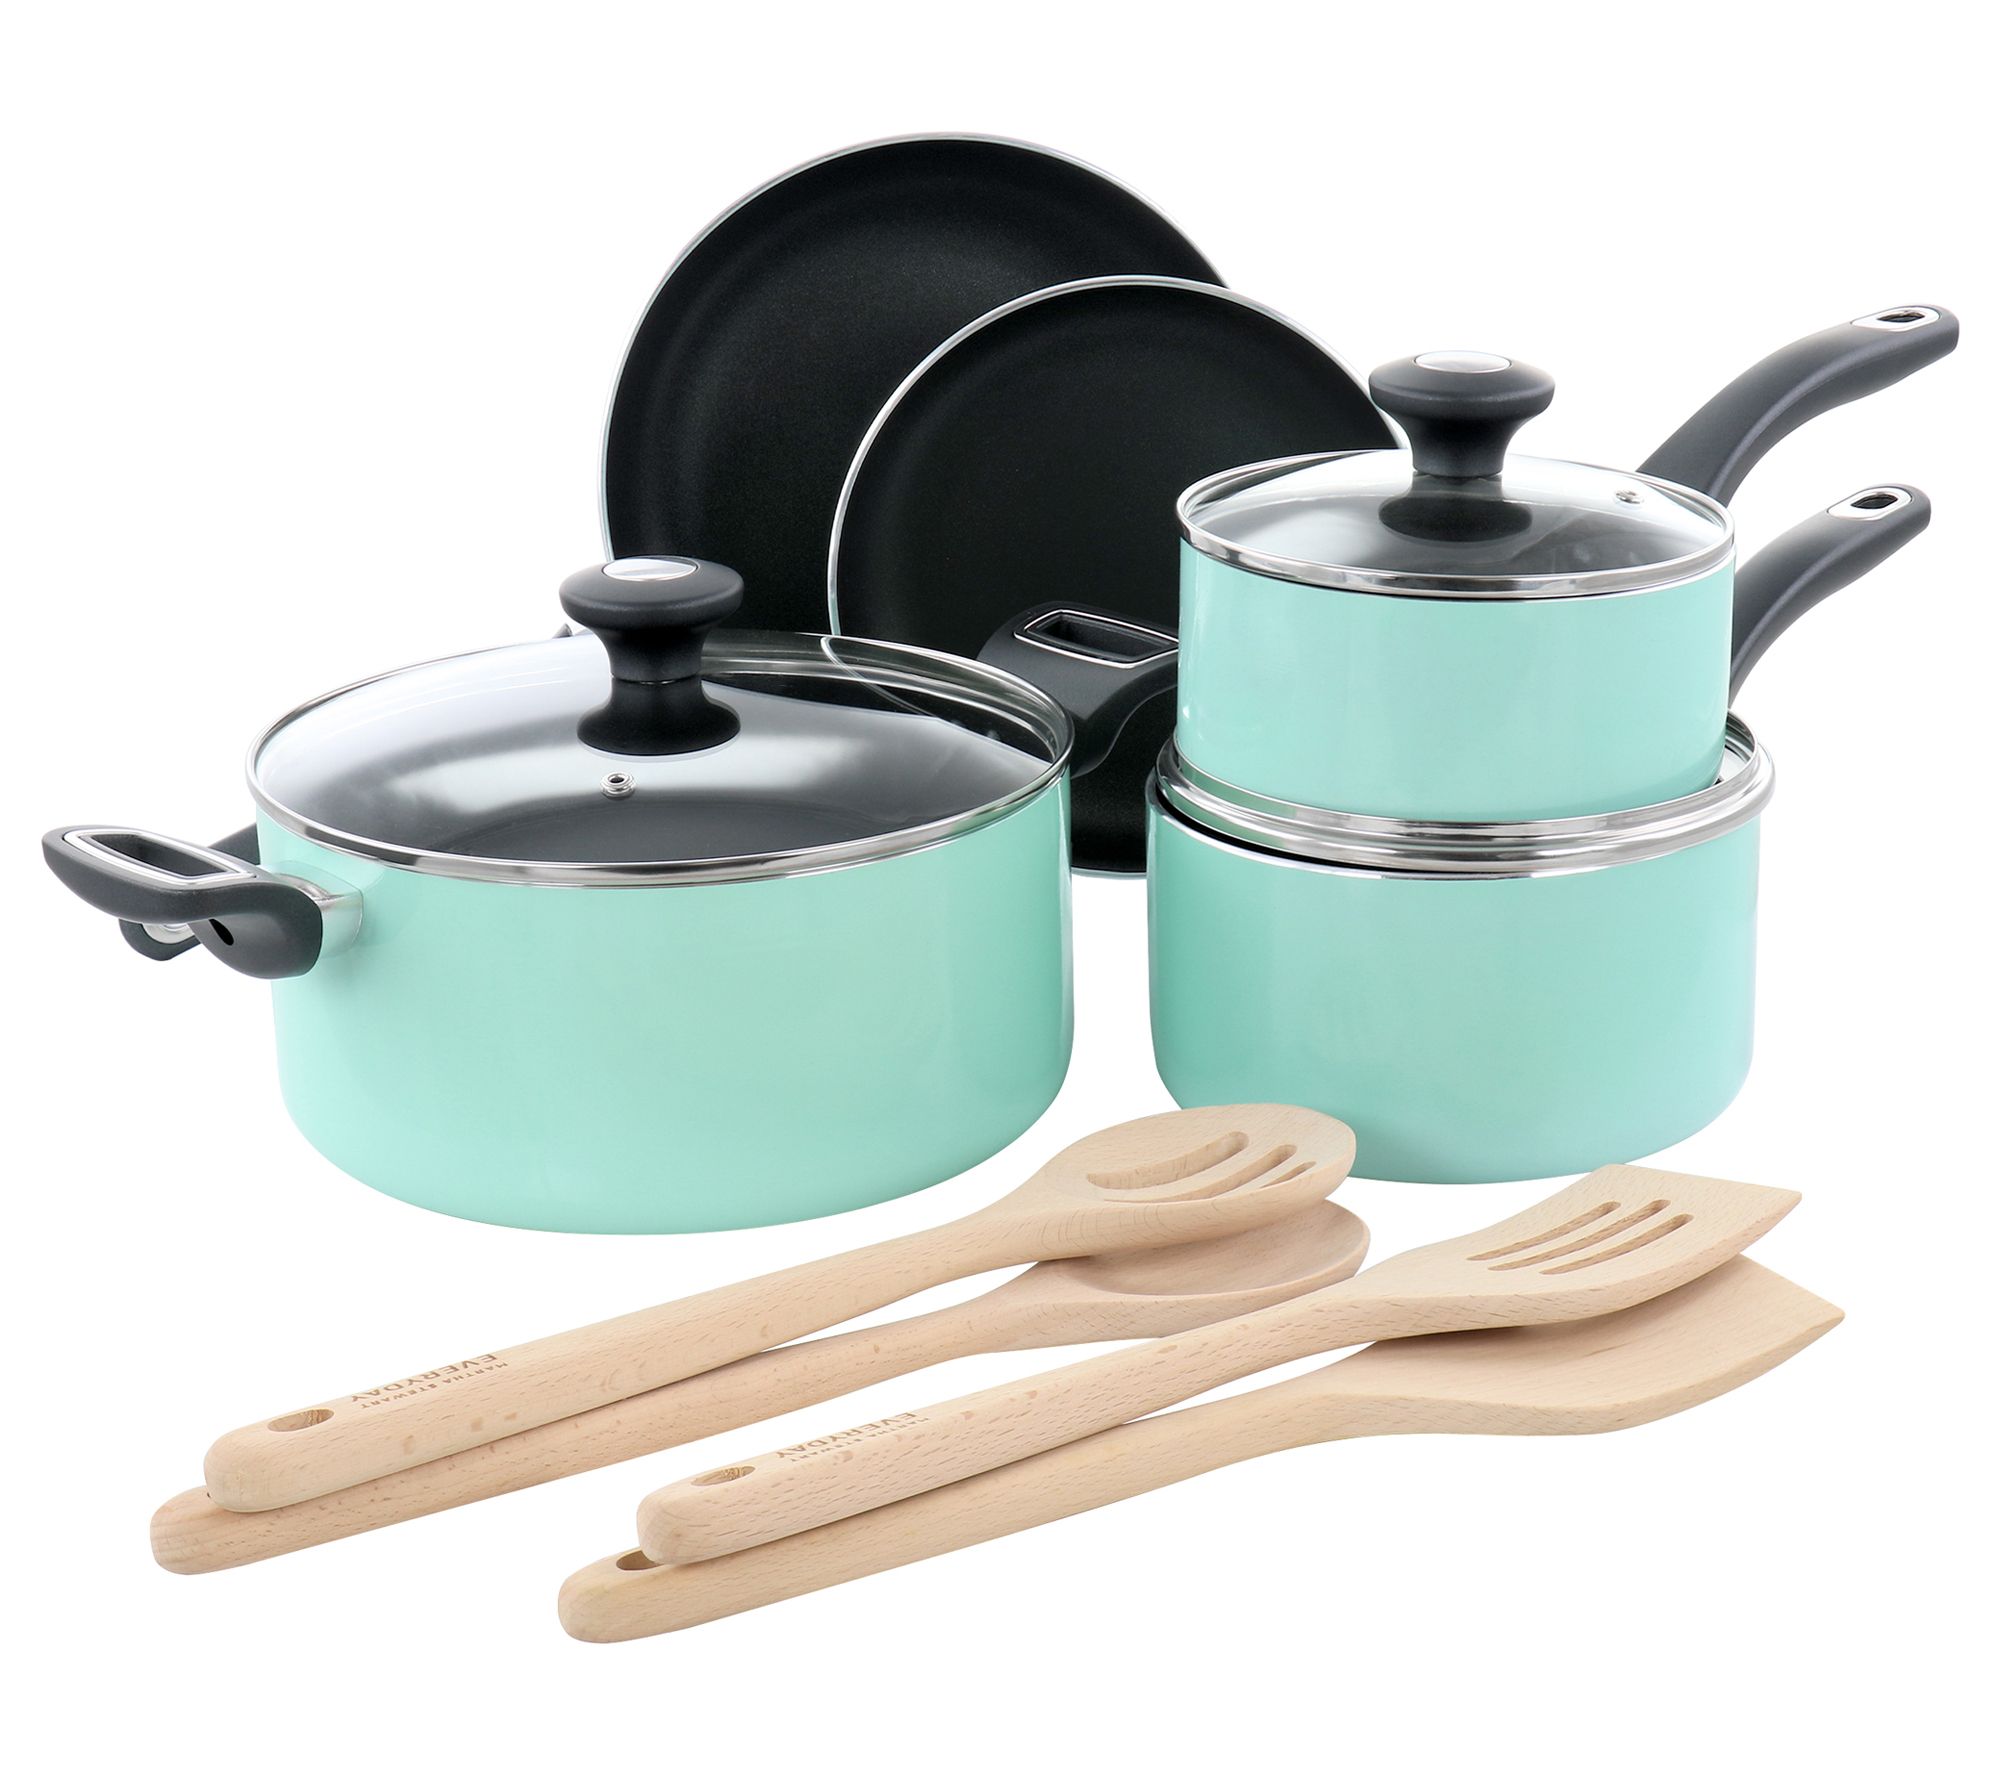 Martha Stewart 10 - PieceAluminum Nonstick Cookware Set & Reviews